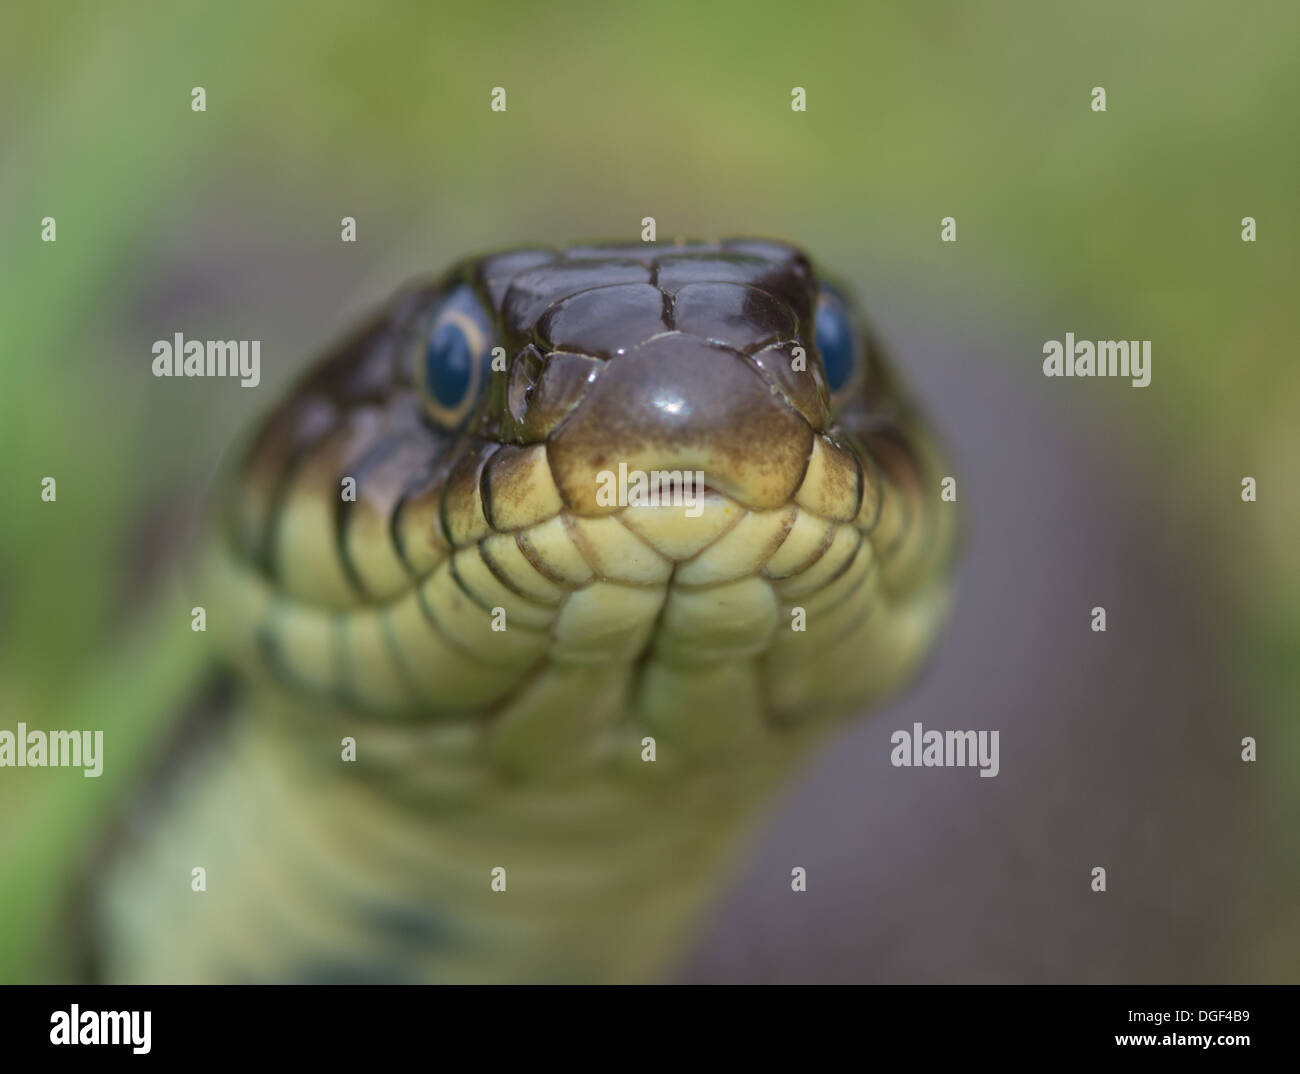 Cerca de un césped cabeza de serpiente en la hierba, la cabeza con la lengua en el Foto de stock